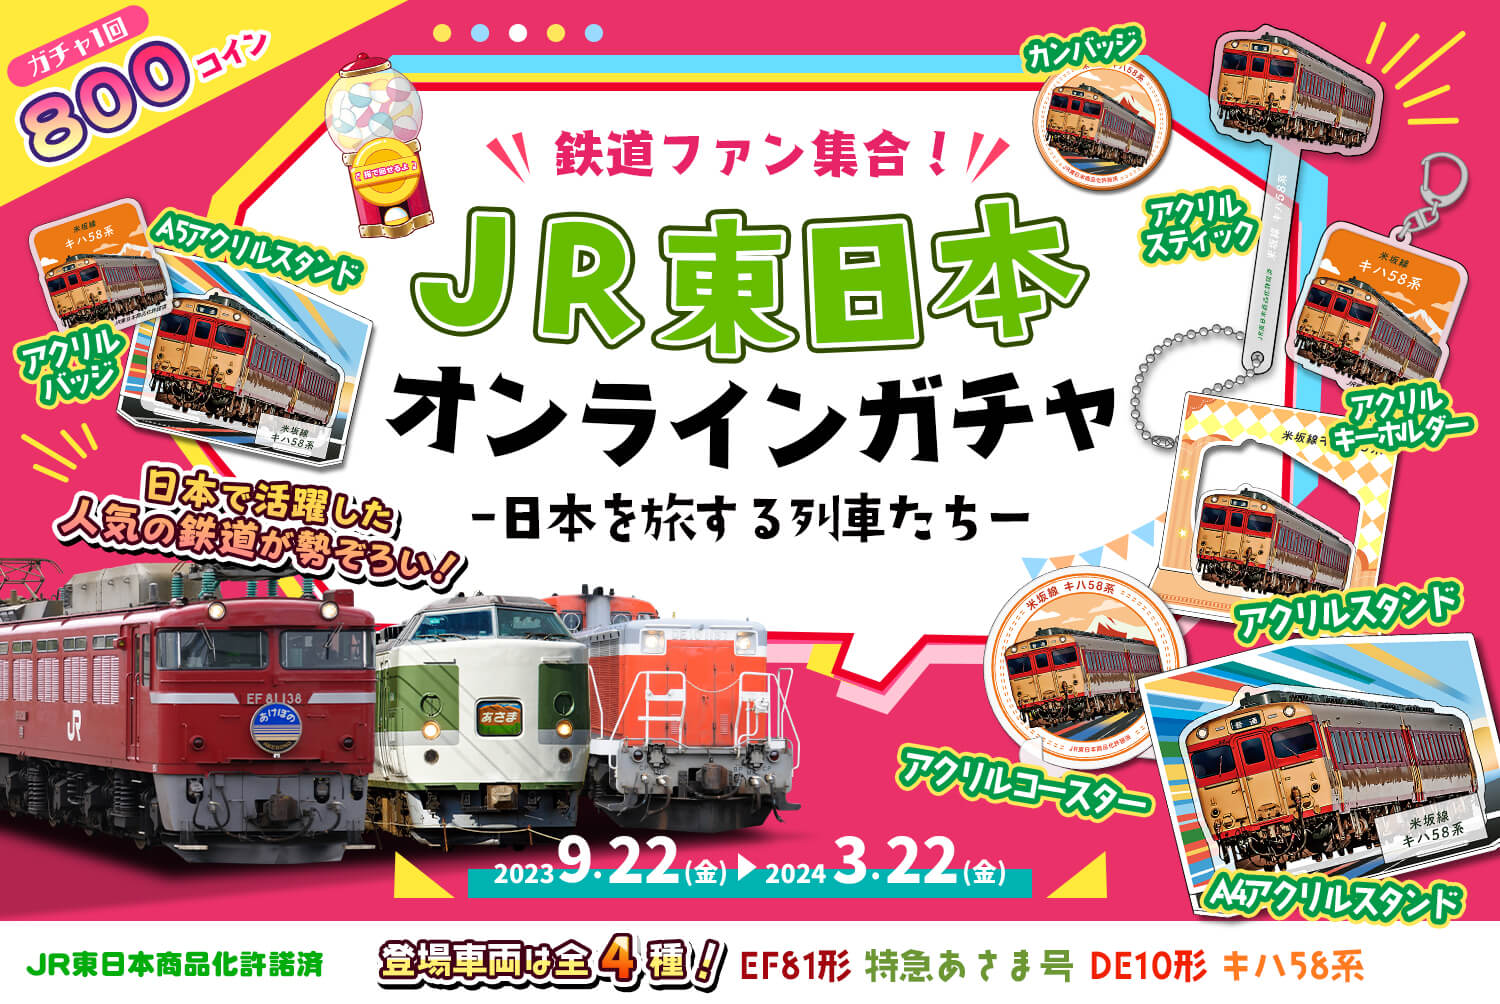 📣鉄道ファン集合〜！💨🚃JR東日本🚃✨オンラインガチャ第1弾✨限定レア商品が登場❤️
